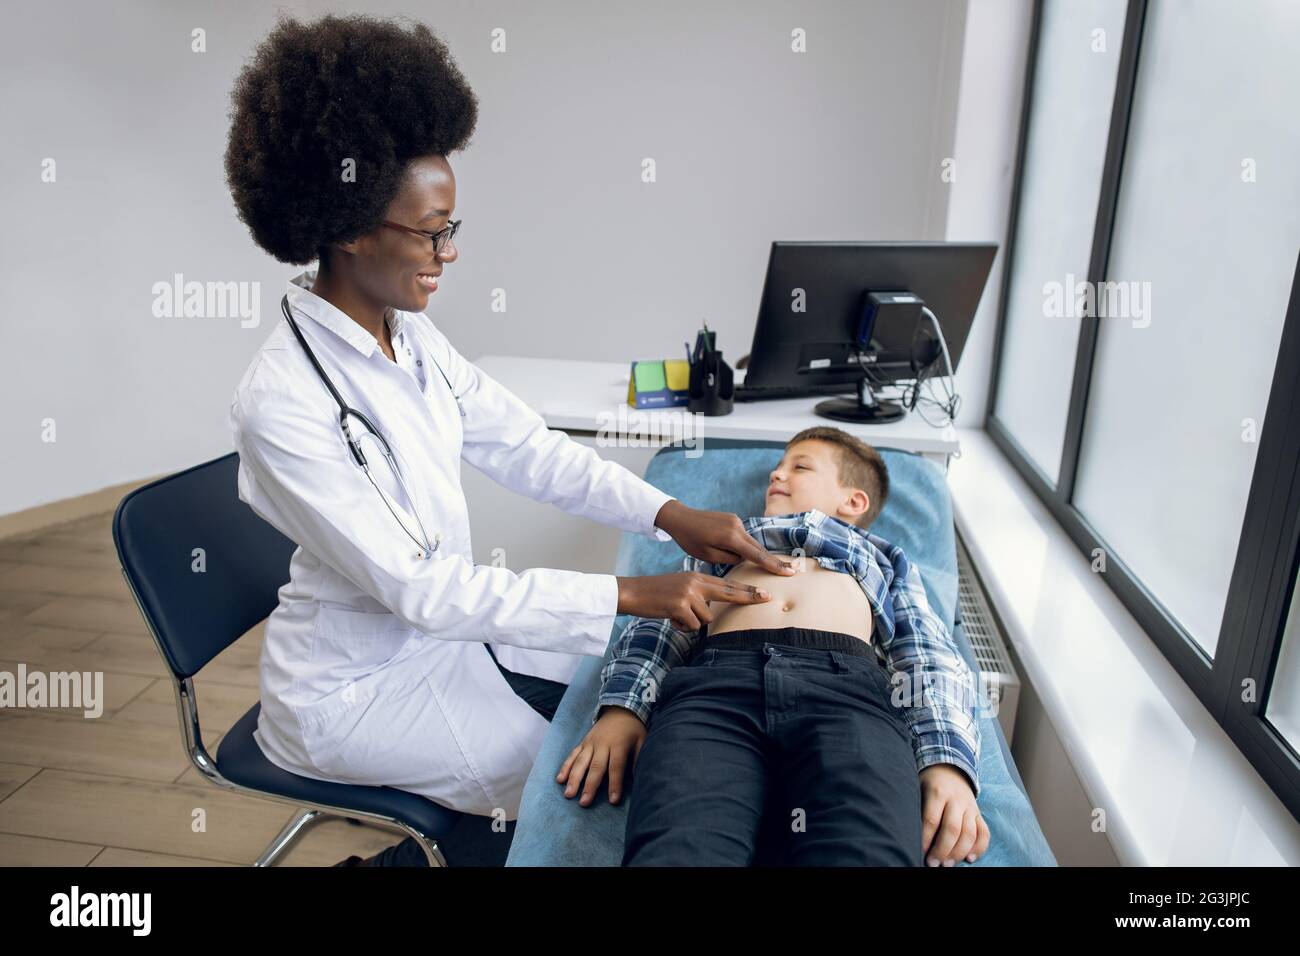 Porträt einer lächelnden, fröhlichen afrikanischen Ärztin, die manuelle Palpation durchführt, den Bauch eines kleinen Jungen untersucht und mit ihm spricht, wo es weh tut. Bauchschmerzen Konzept Stockfoto